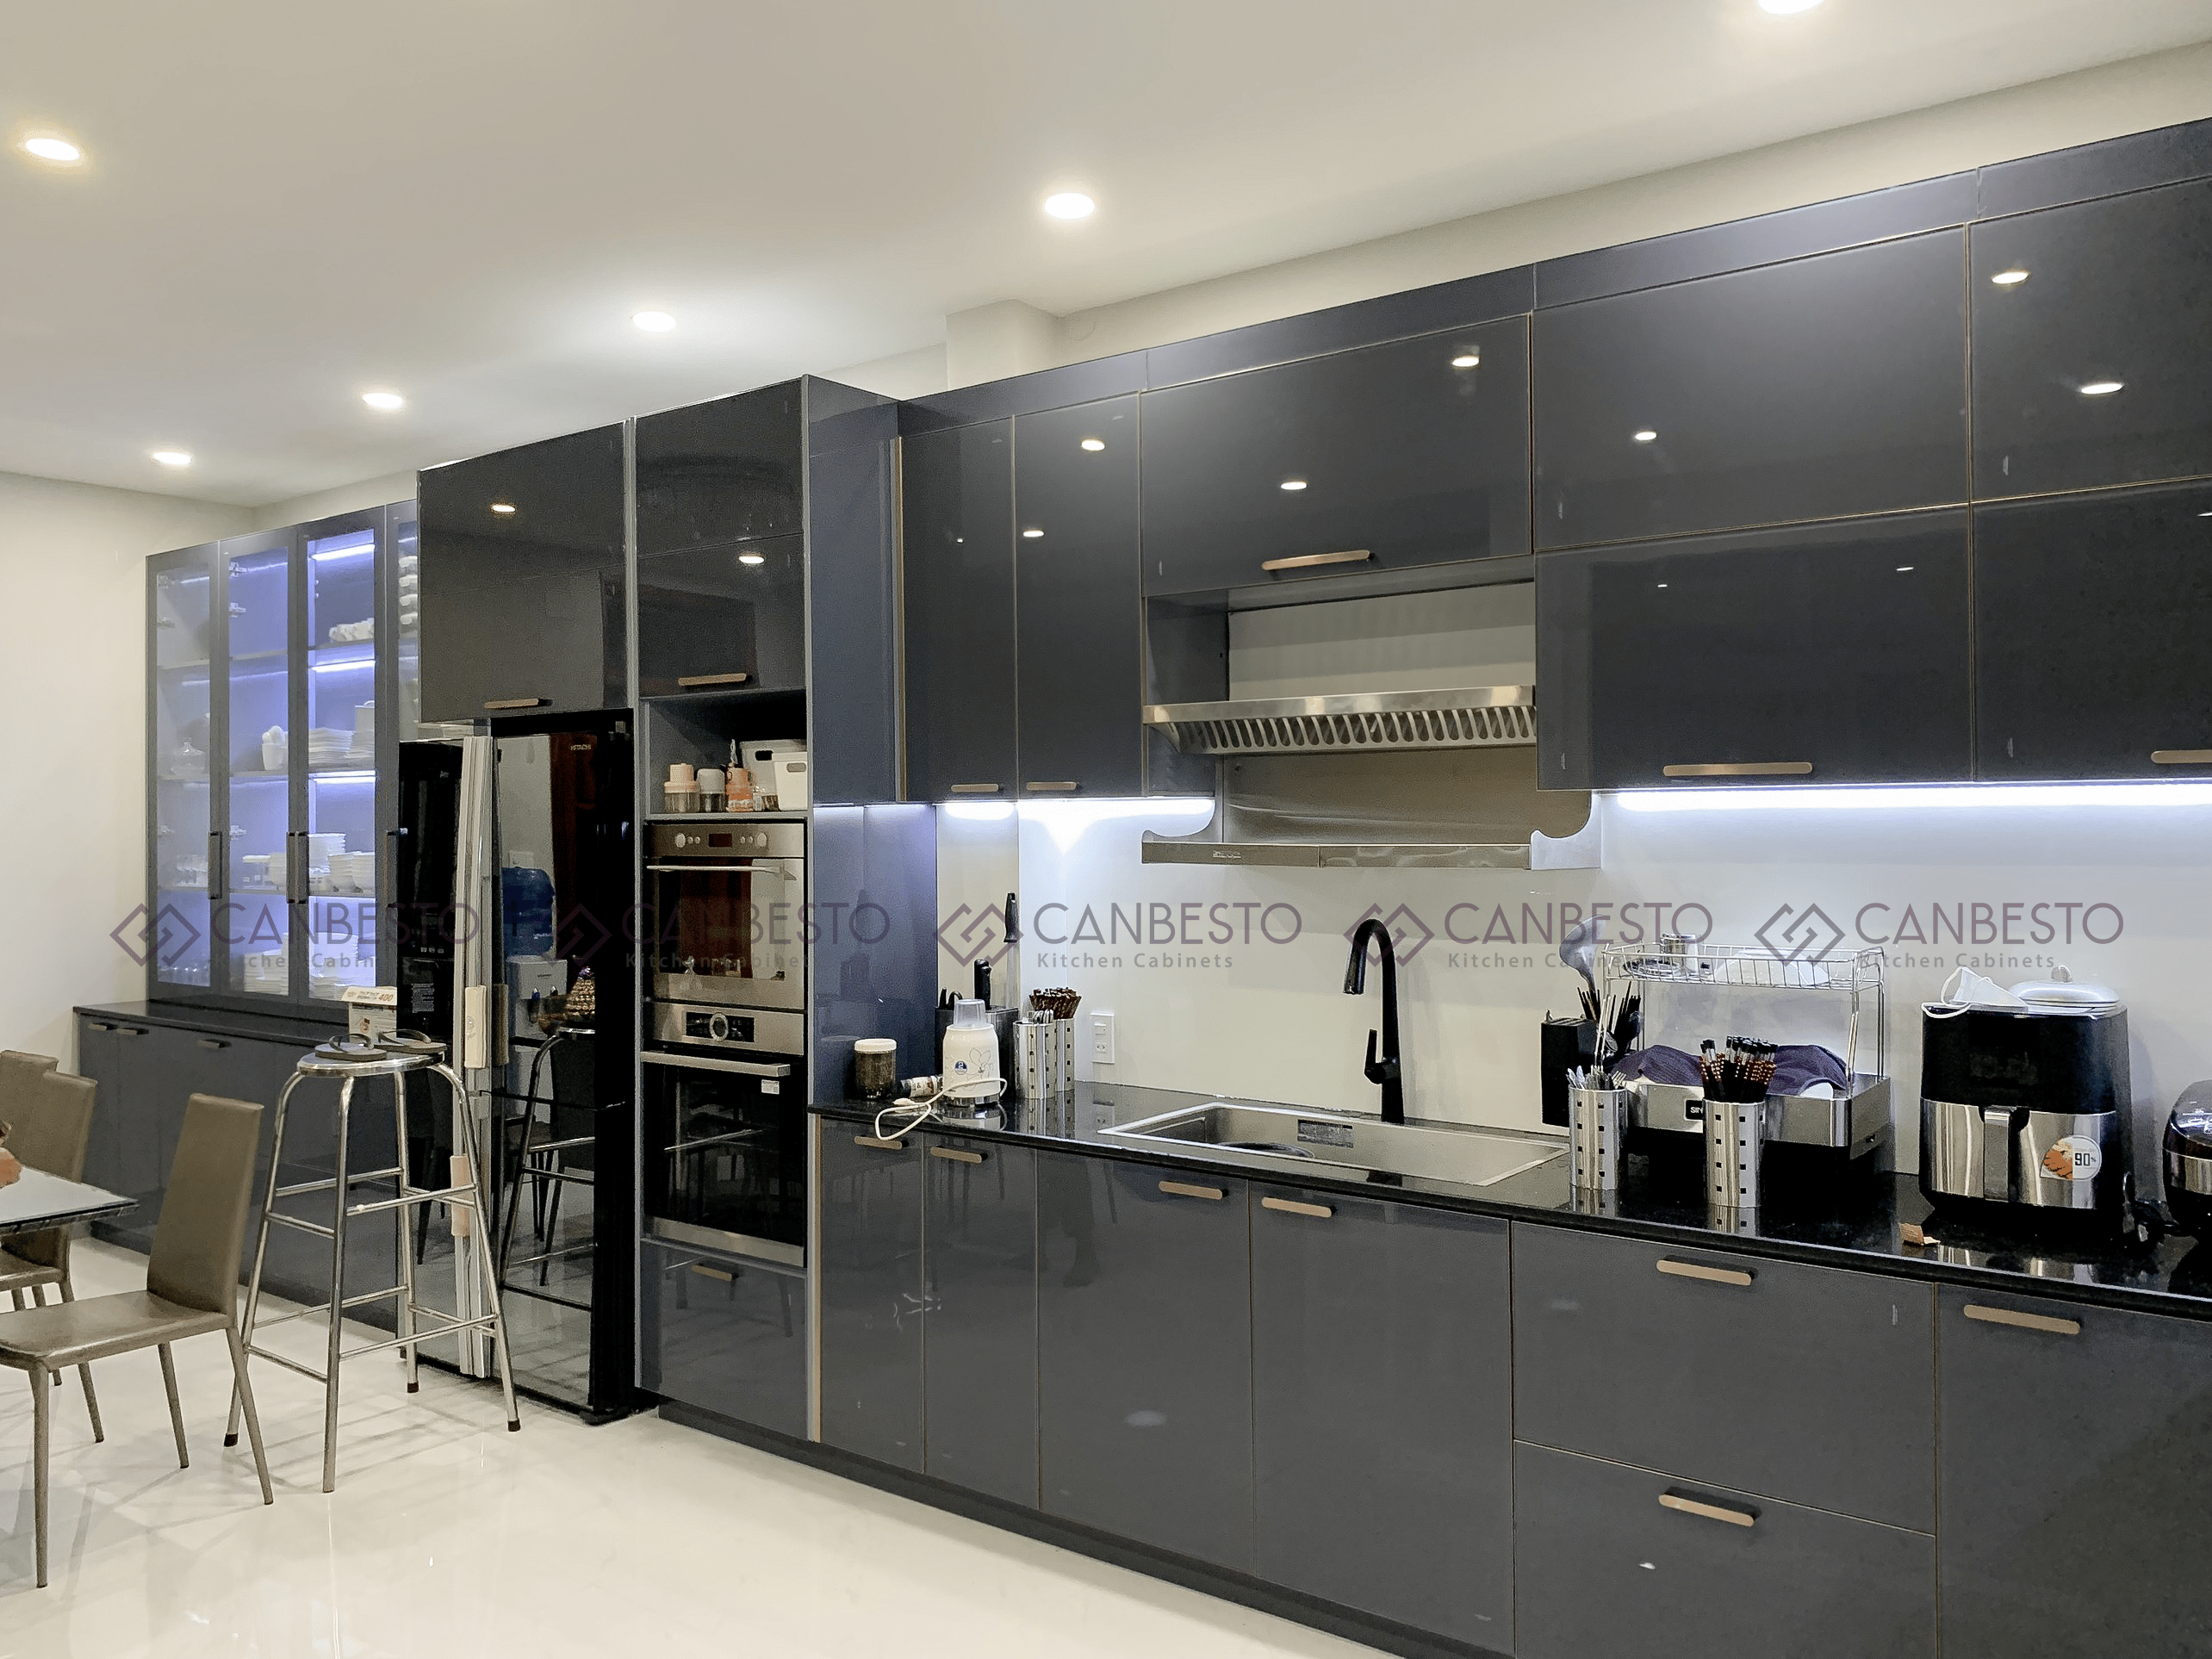 Canbesto: Chuyên thiết kế, thi công nội thất và tủ bếp tại Biên Hòa.